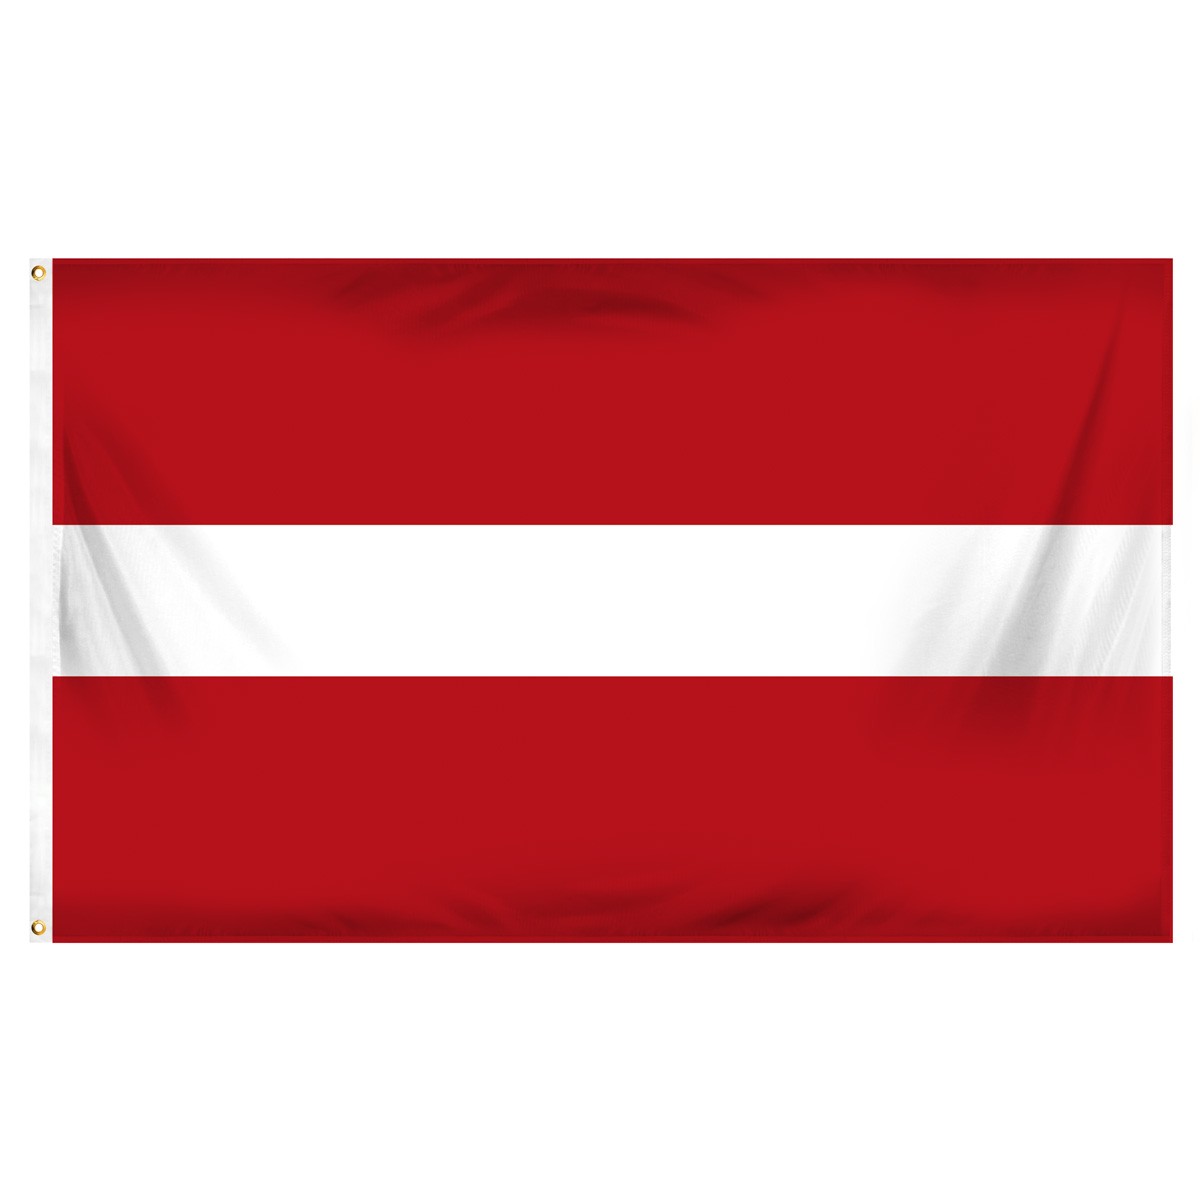 Latvia Beach Flag and Sailing Flag